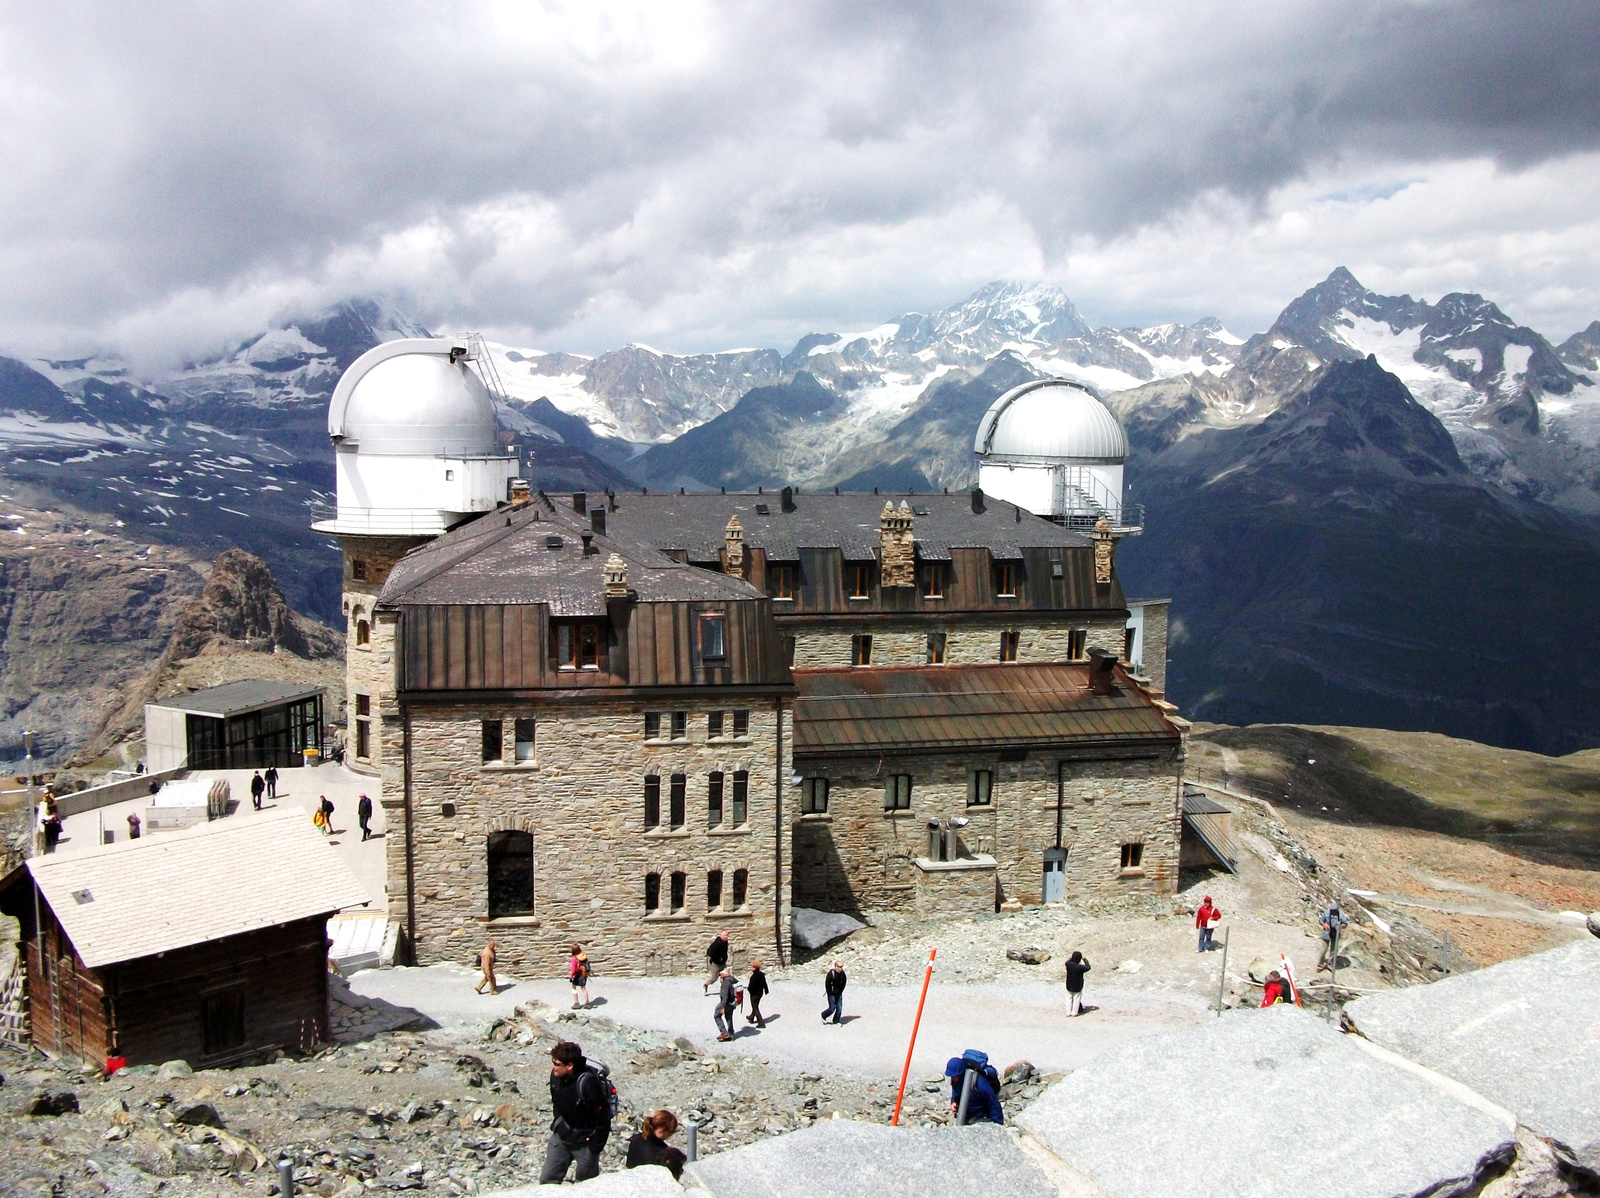 Szálloda és csillagvizsgáló 3100 méter magasban